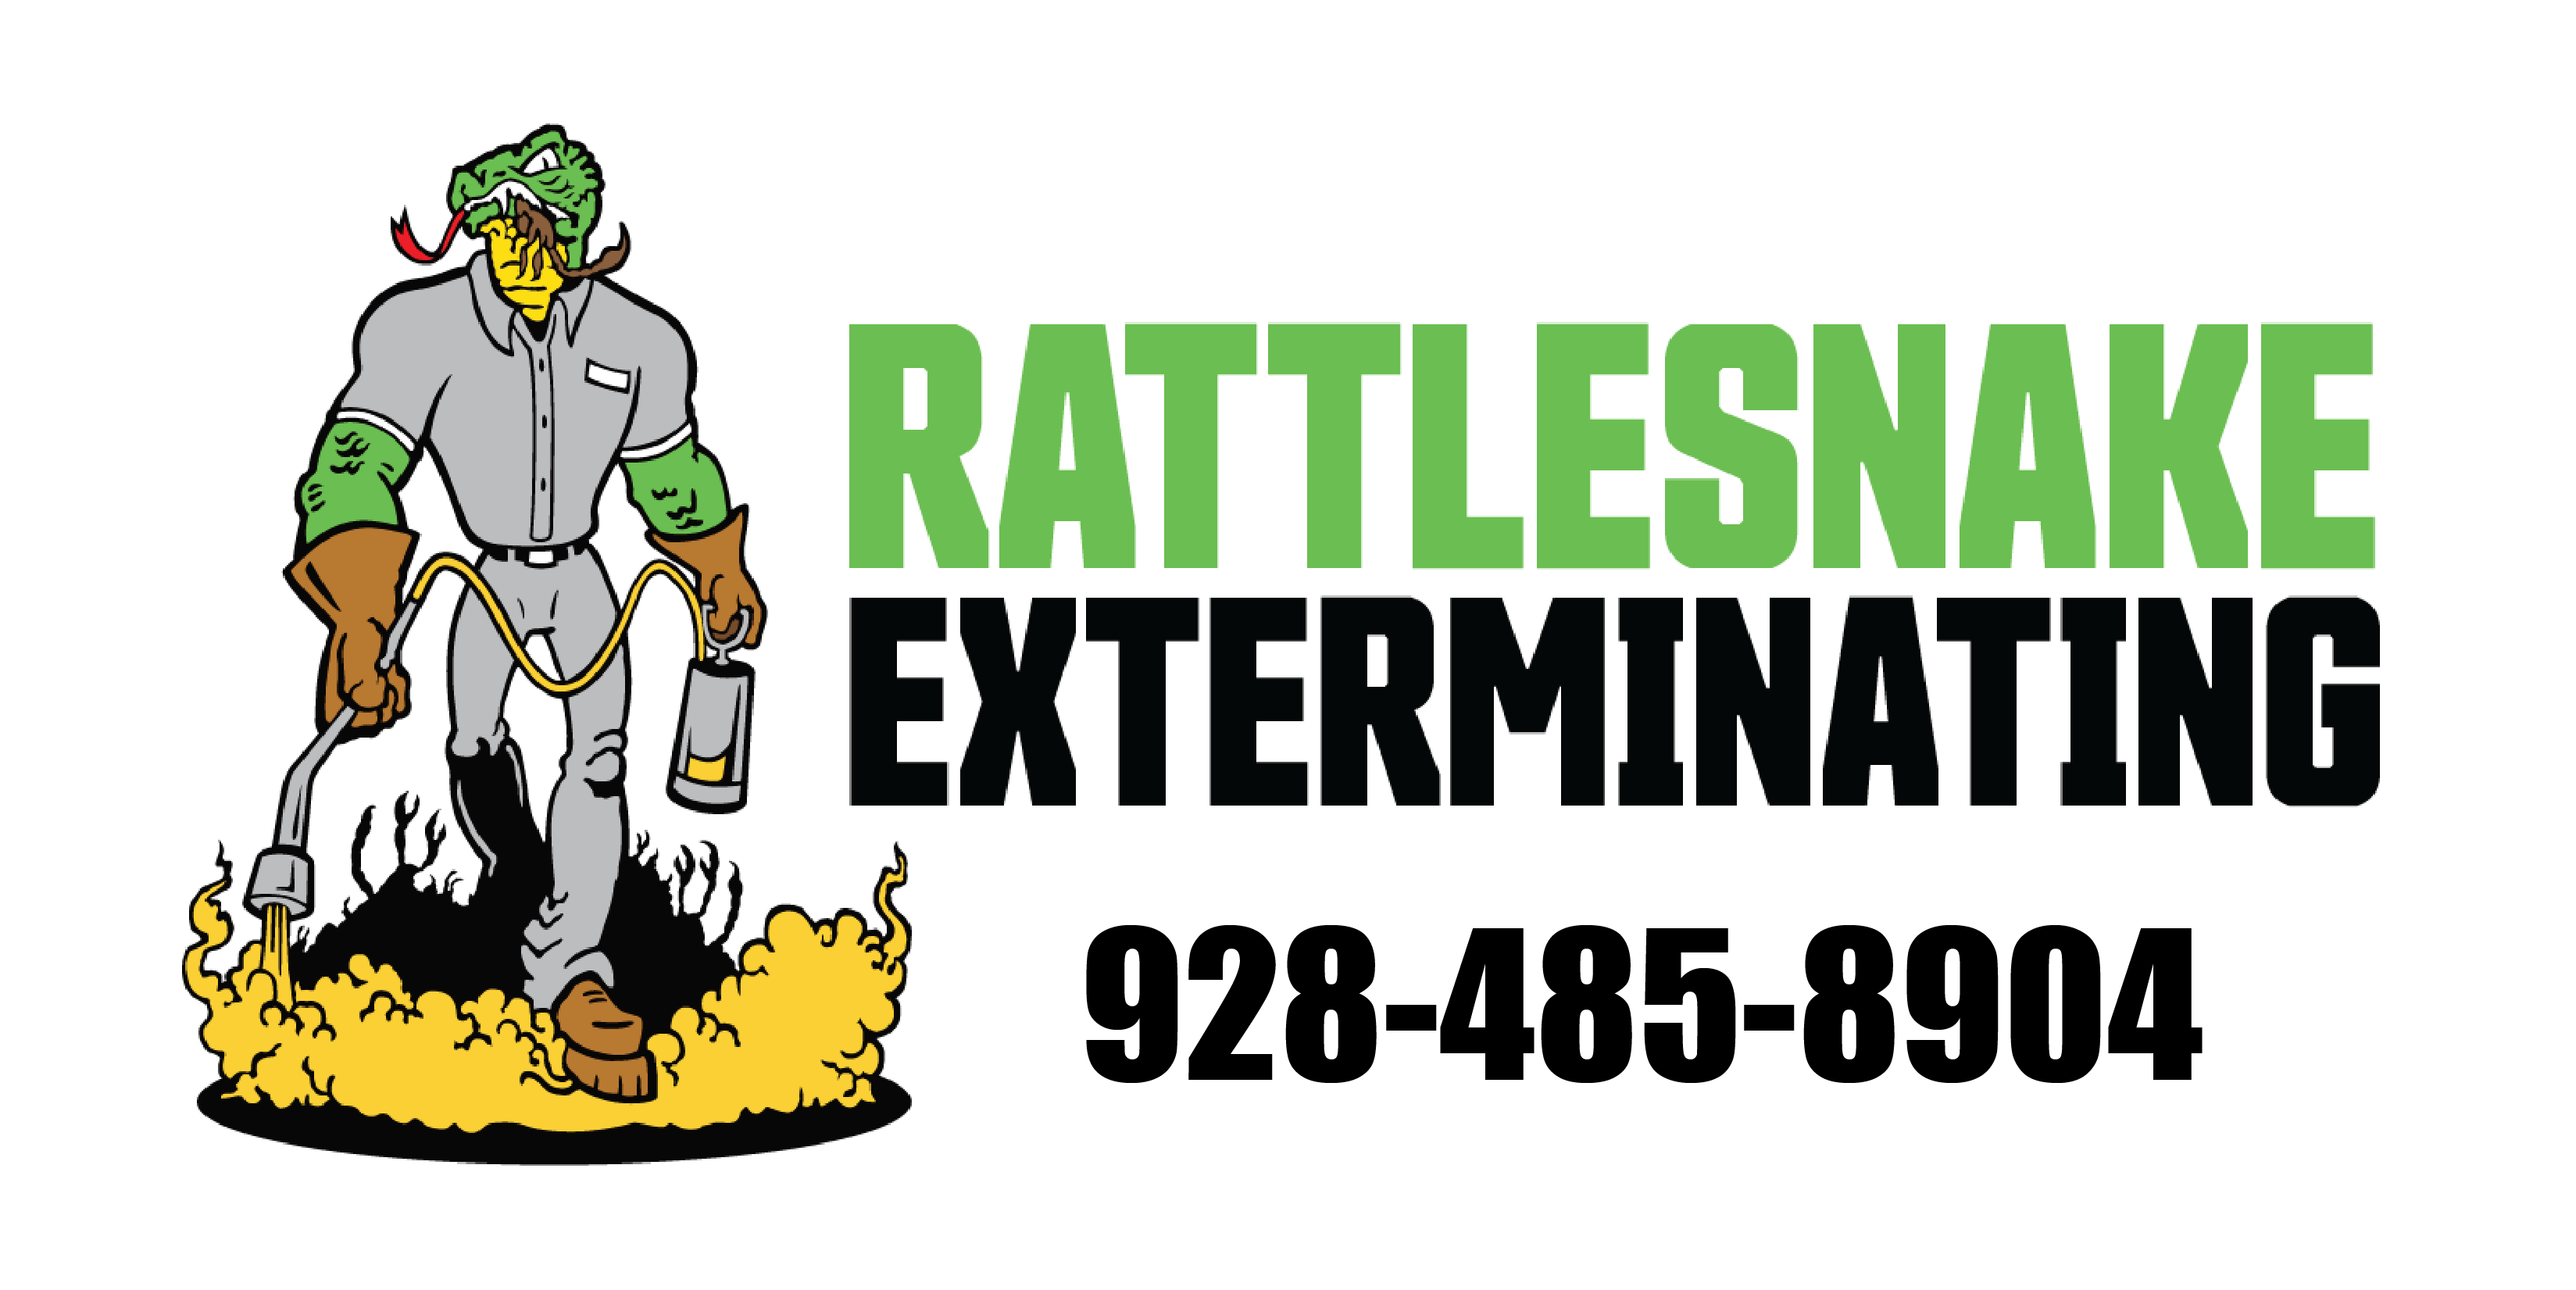 Rattlesnake Exterminating